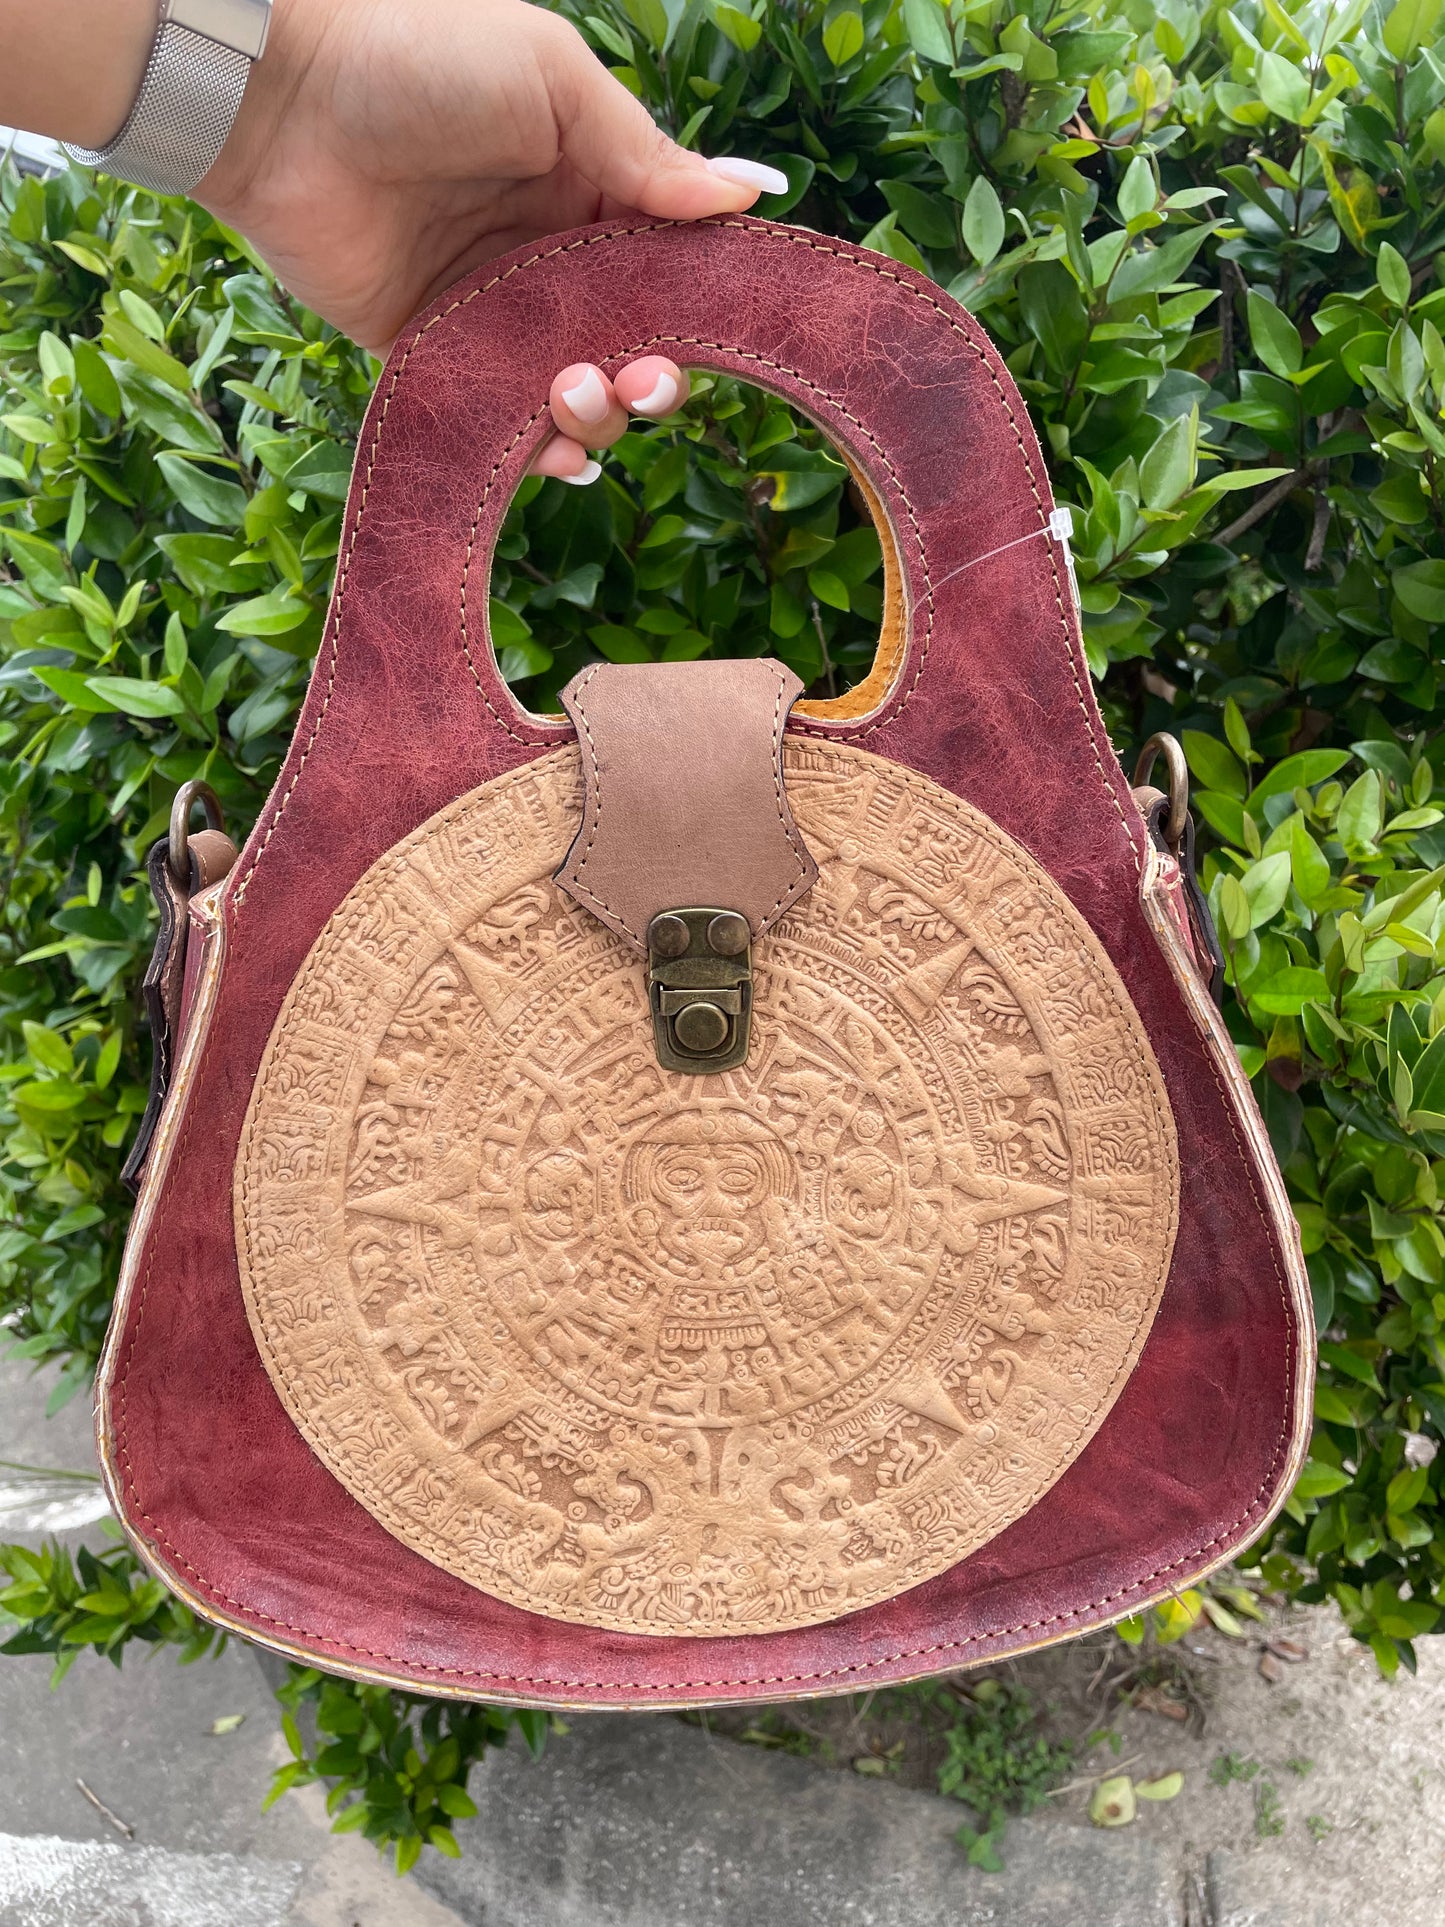 Aztec Calendar Leather Purse